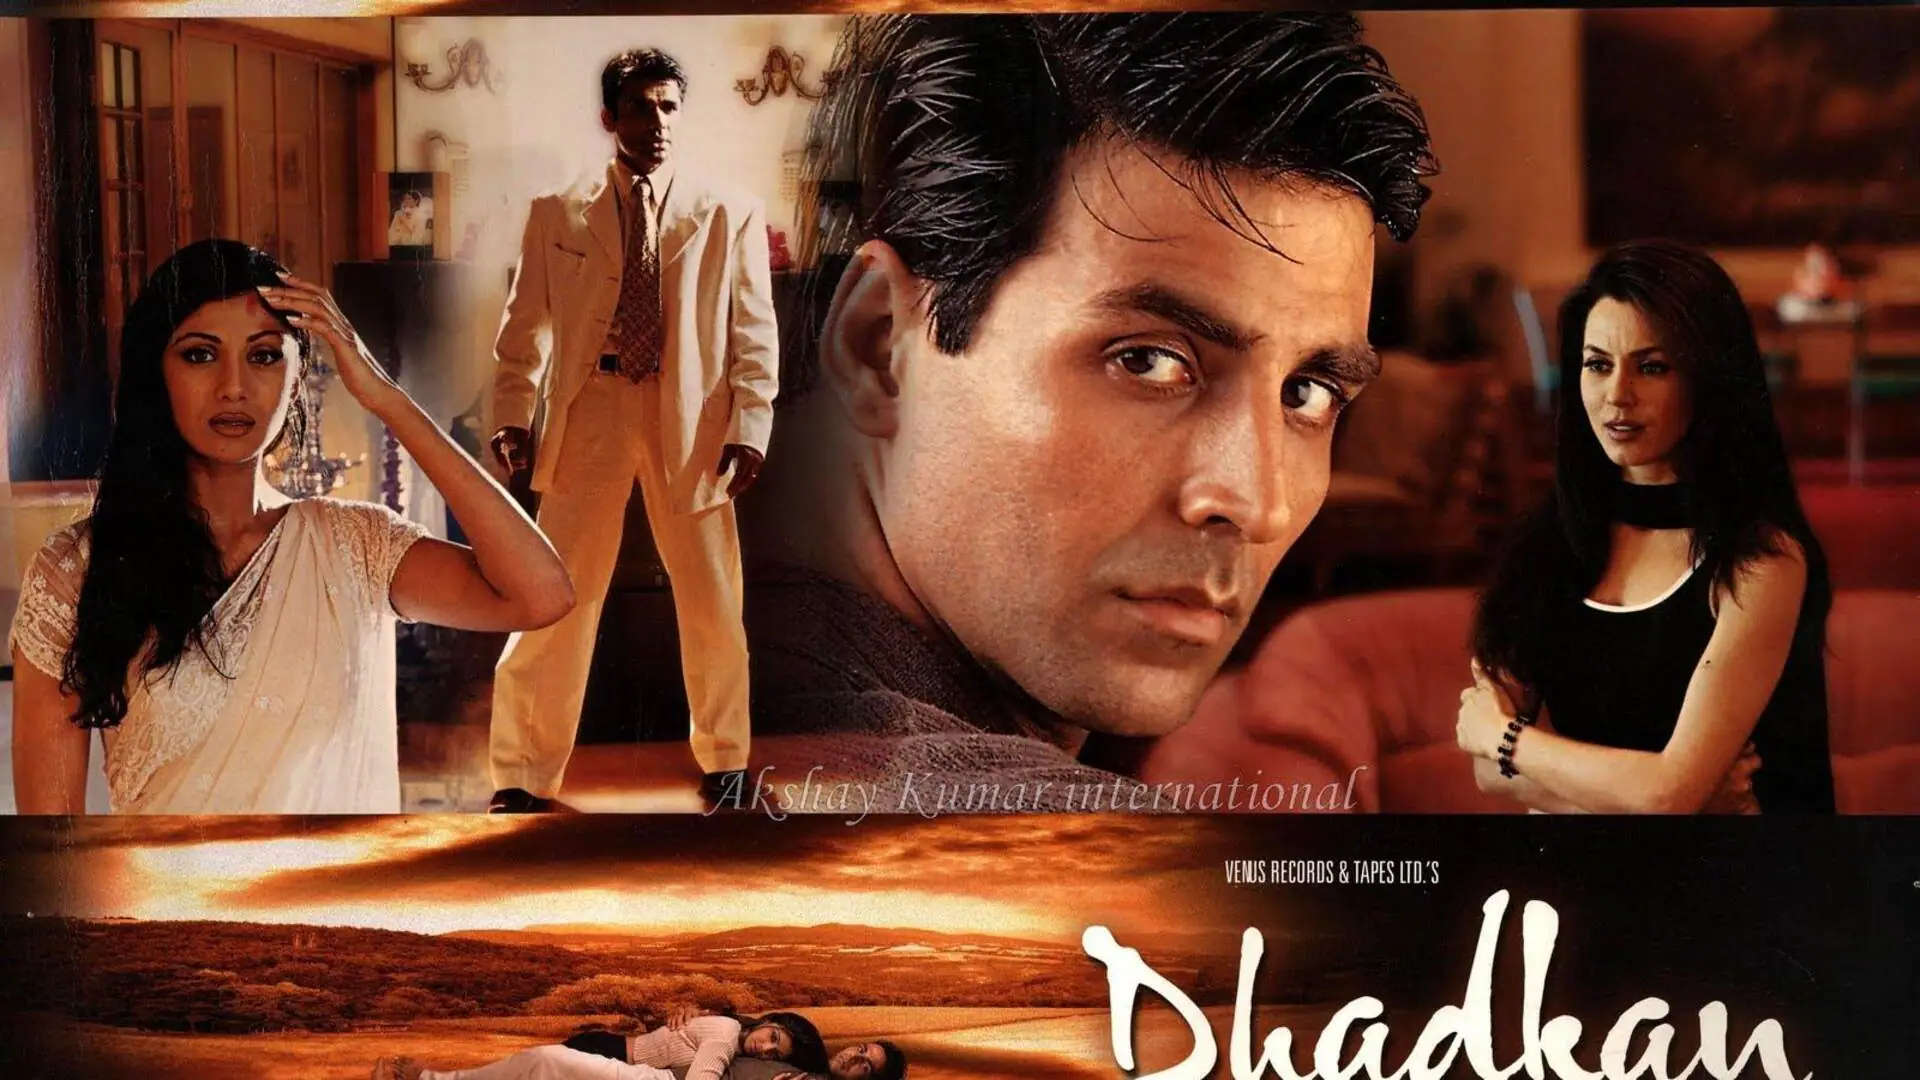 Dhadkan 2: निर्देशक धर्मेश दर्शन ने 'धड़कन 2' पर बना दिया सस्पेंस, अक्षय, सुनील और शिल्पा के फैंस हुए कंफ्यूज